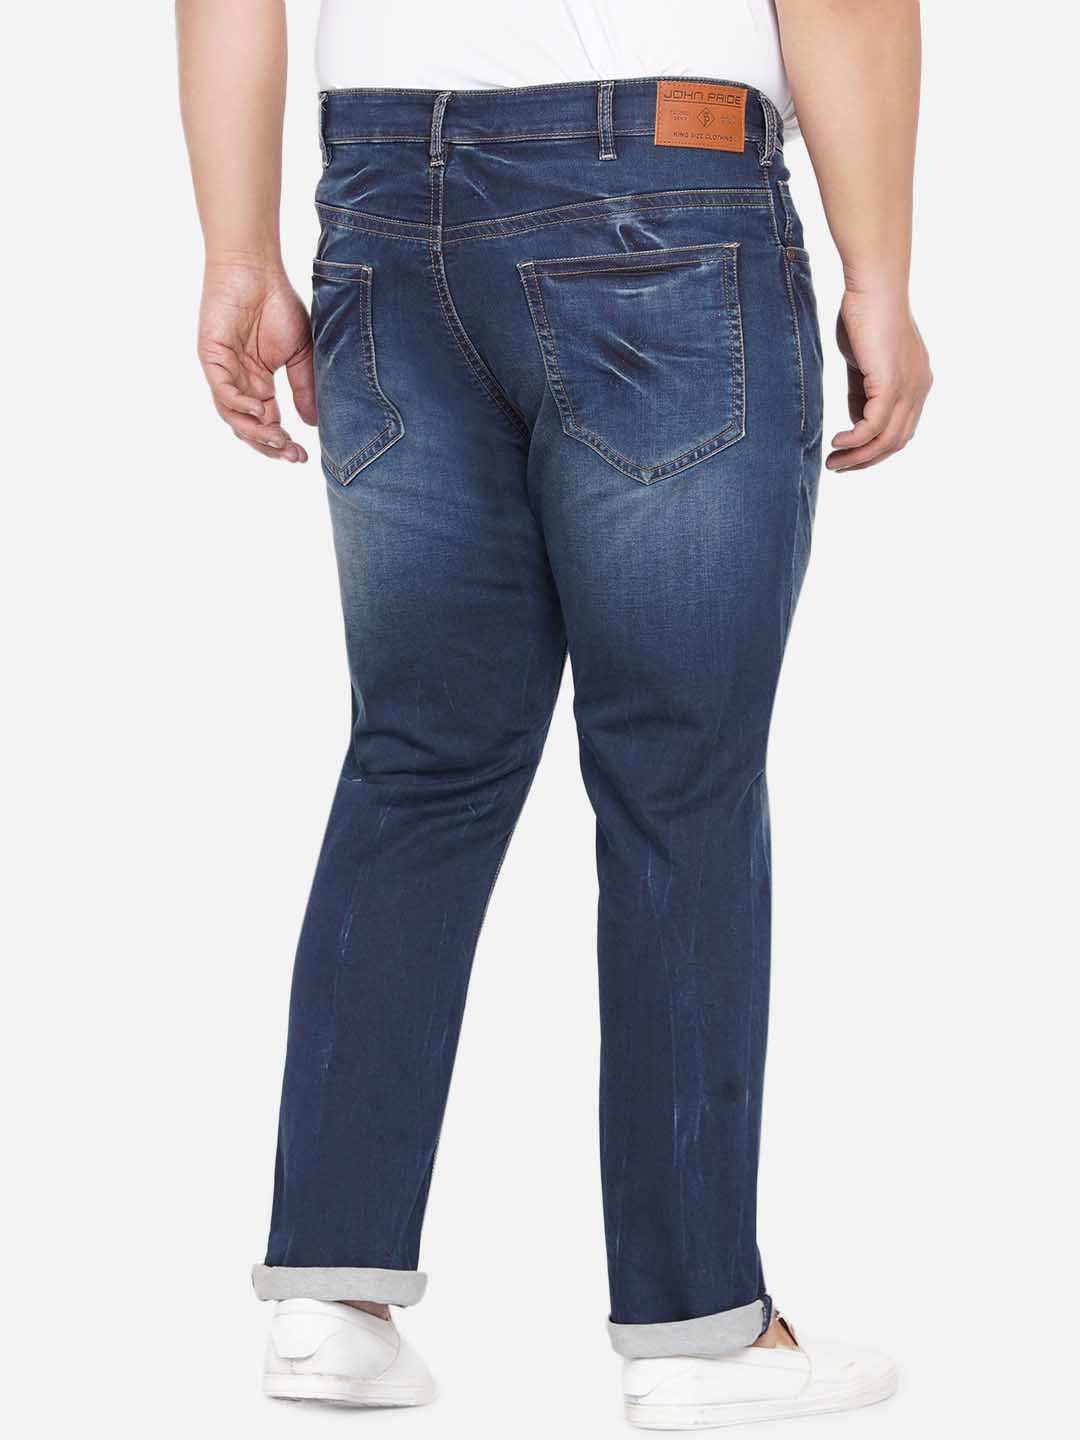 bottomwear/jeans/JPJ12236/jpj12236-5.jpg